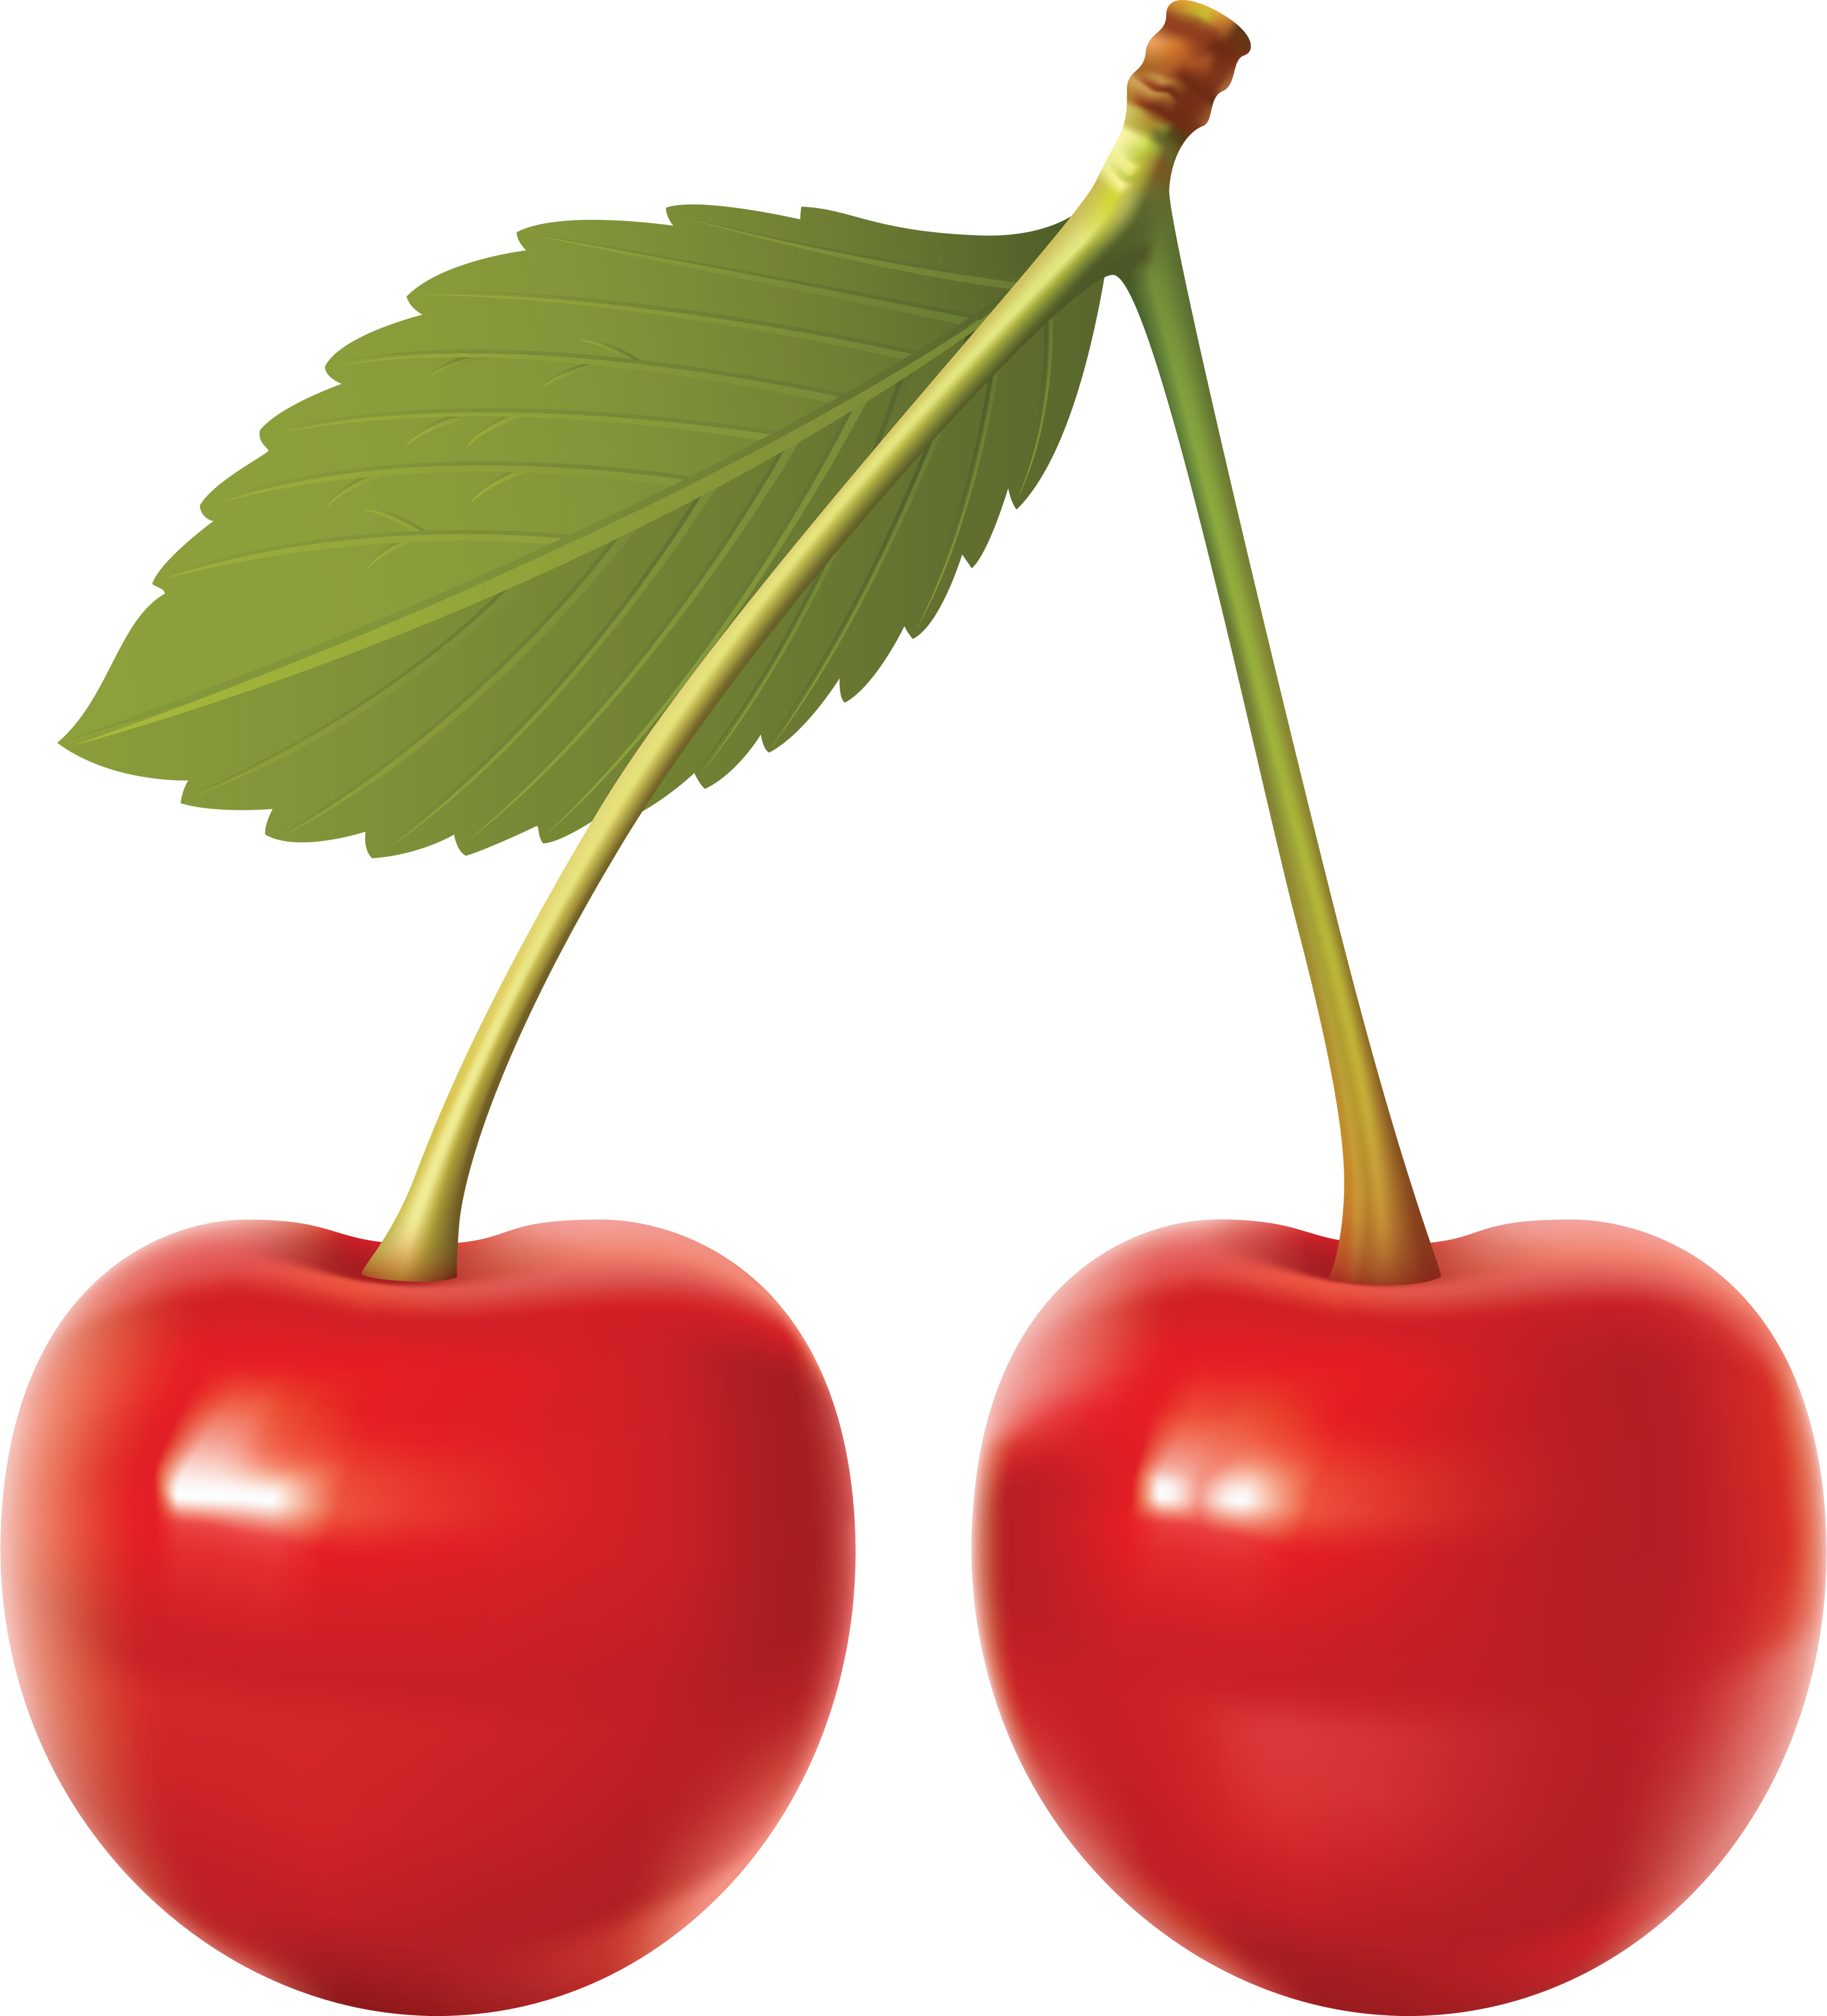 Cherries Transparent Images